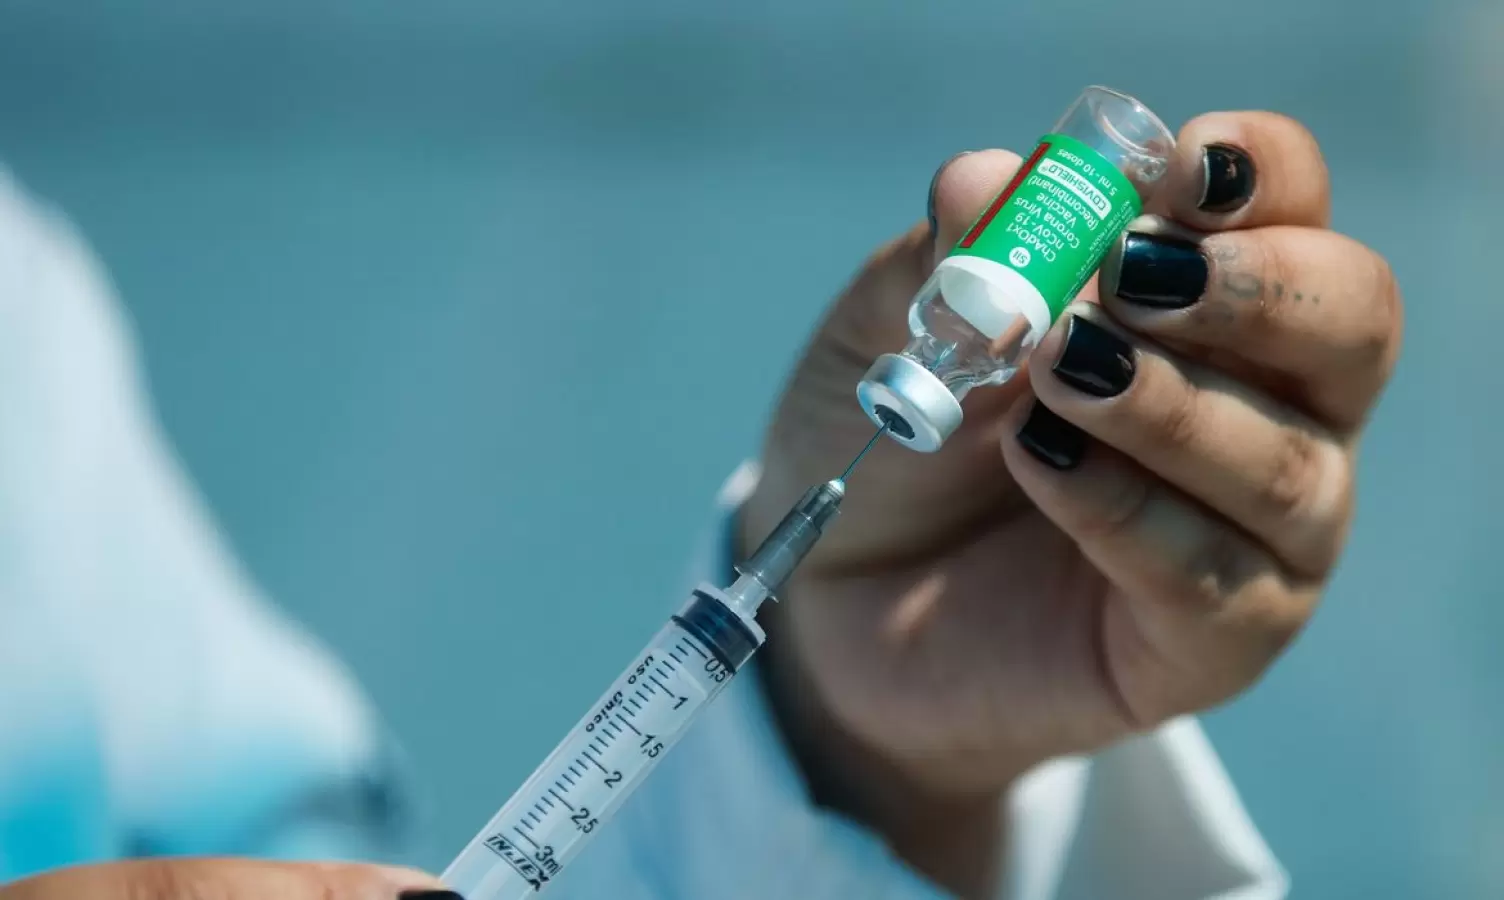 Uma dose de vacina reduz infecção em até 65%, revela estudo